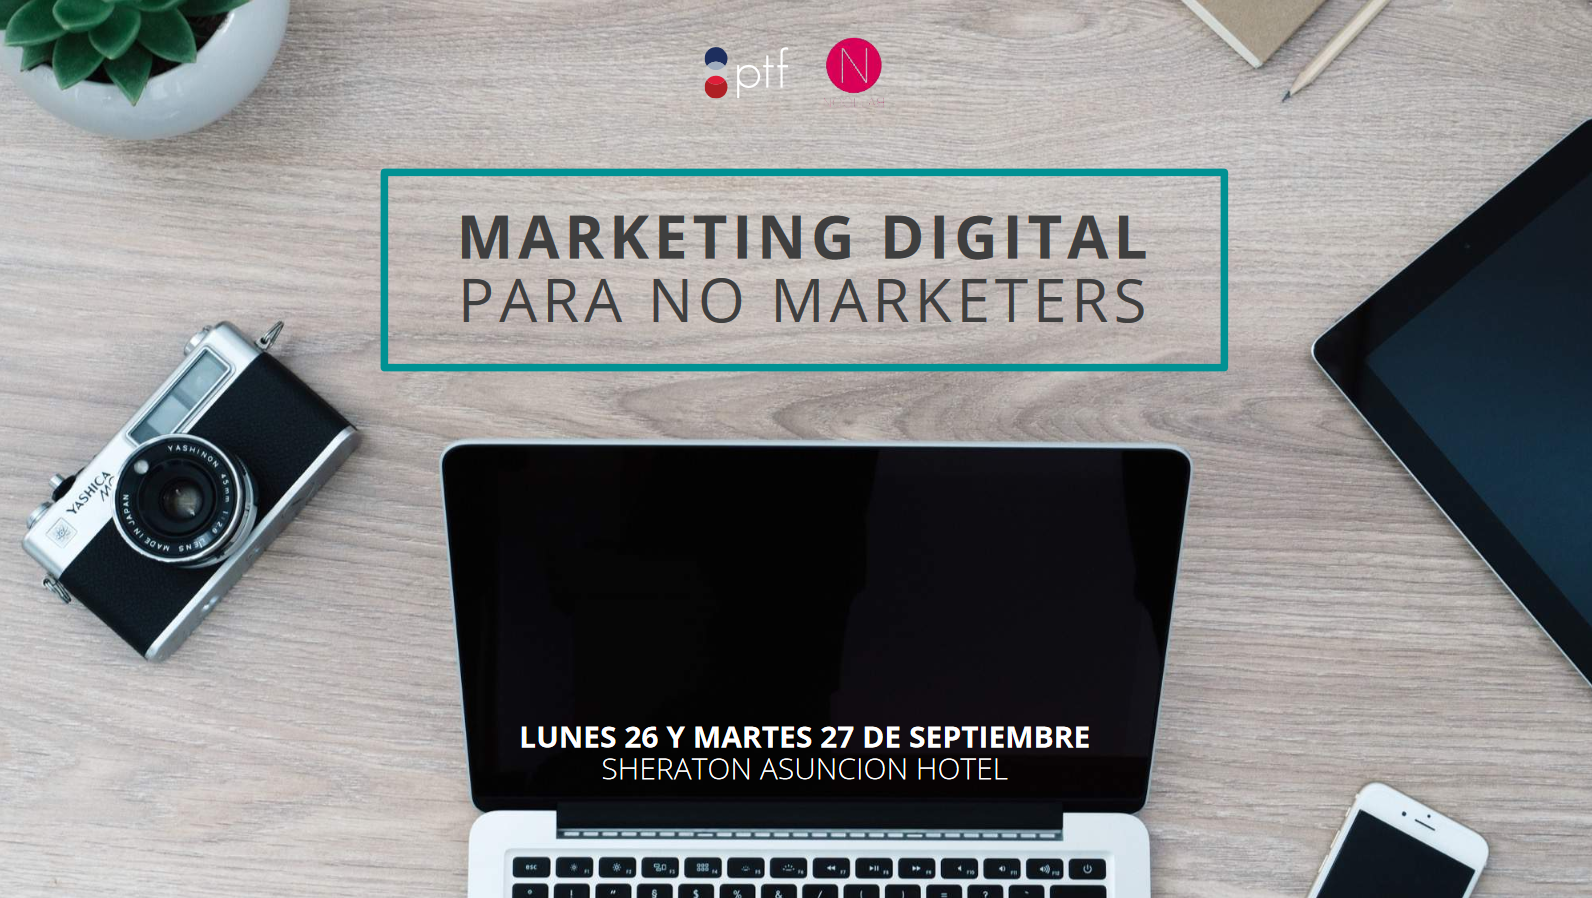 PTF ofrece Seminario de Marketing Digital para no Marketers